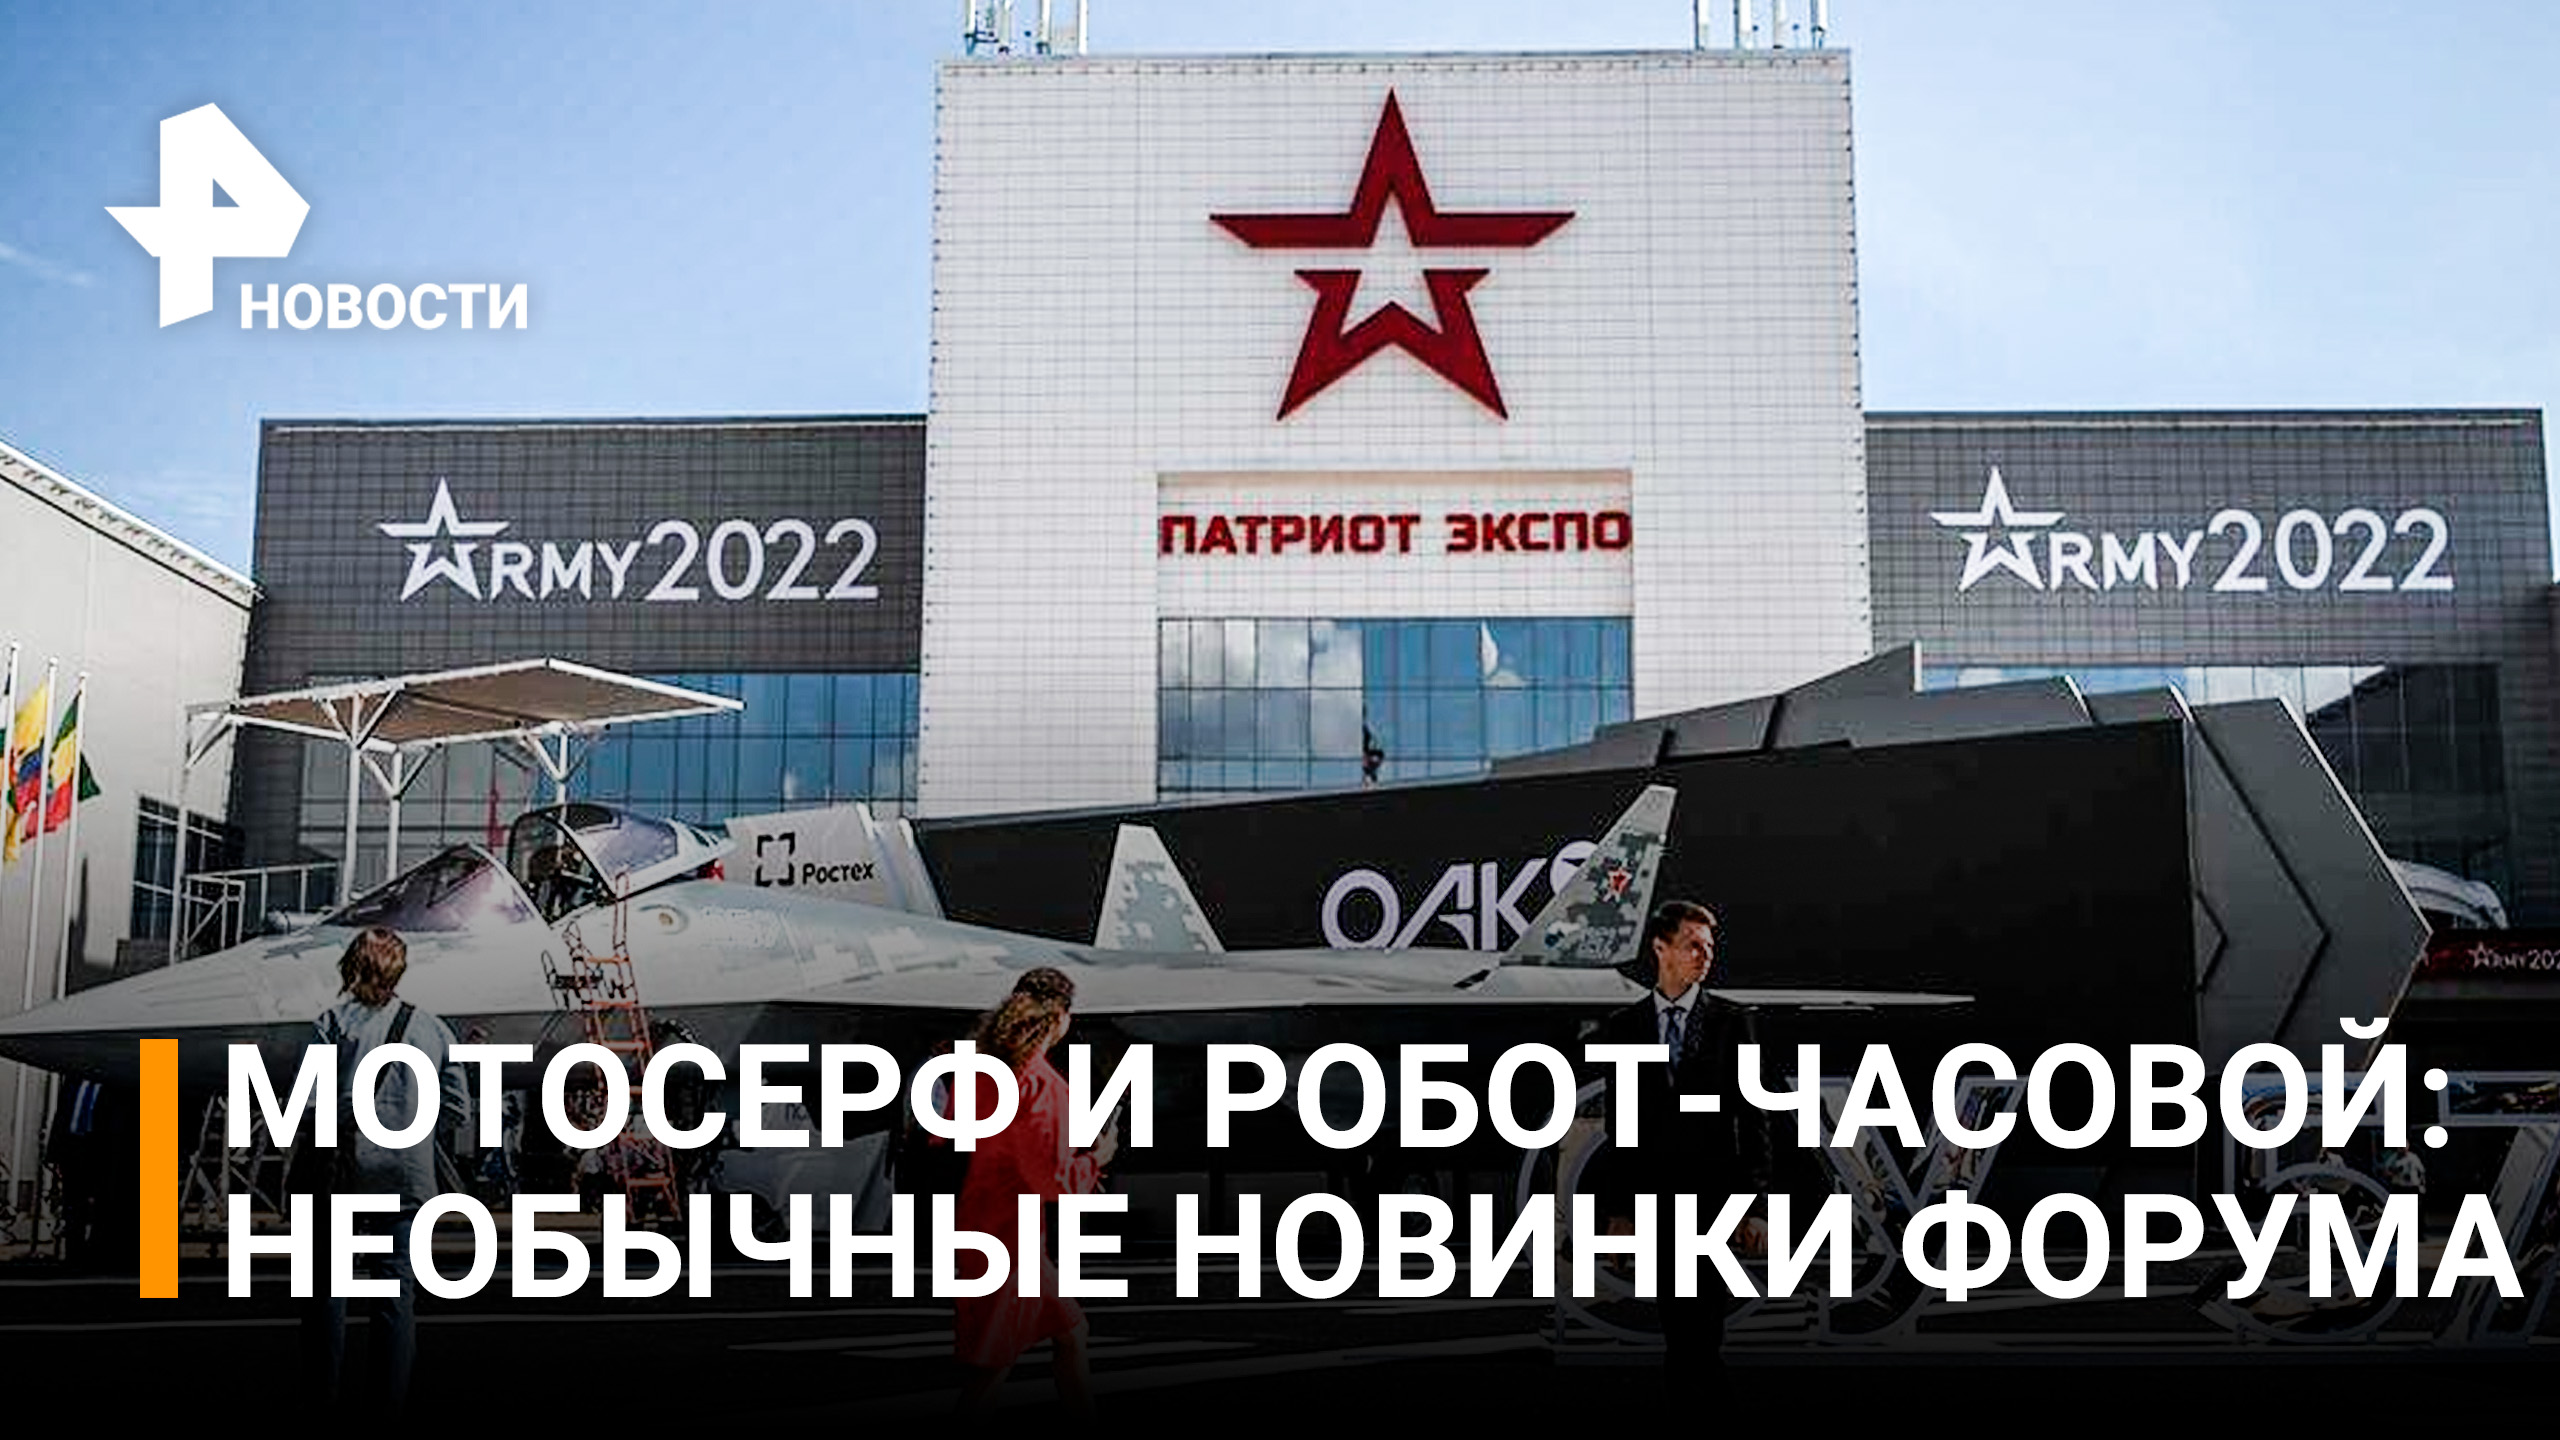 Новейшие разработки: более 1,5 тыс. предприятий участвуют в форуме "Армия-2022" / РЕН Новости